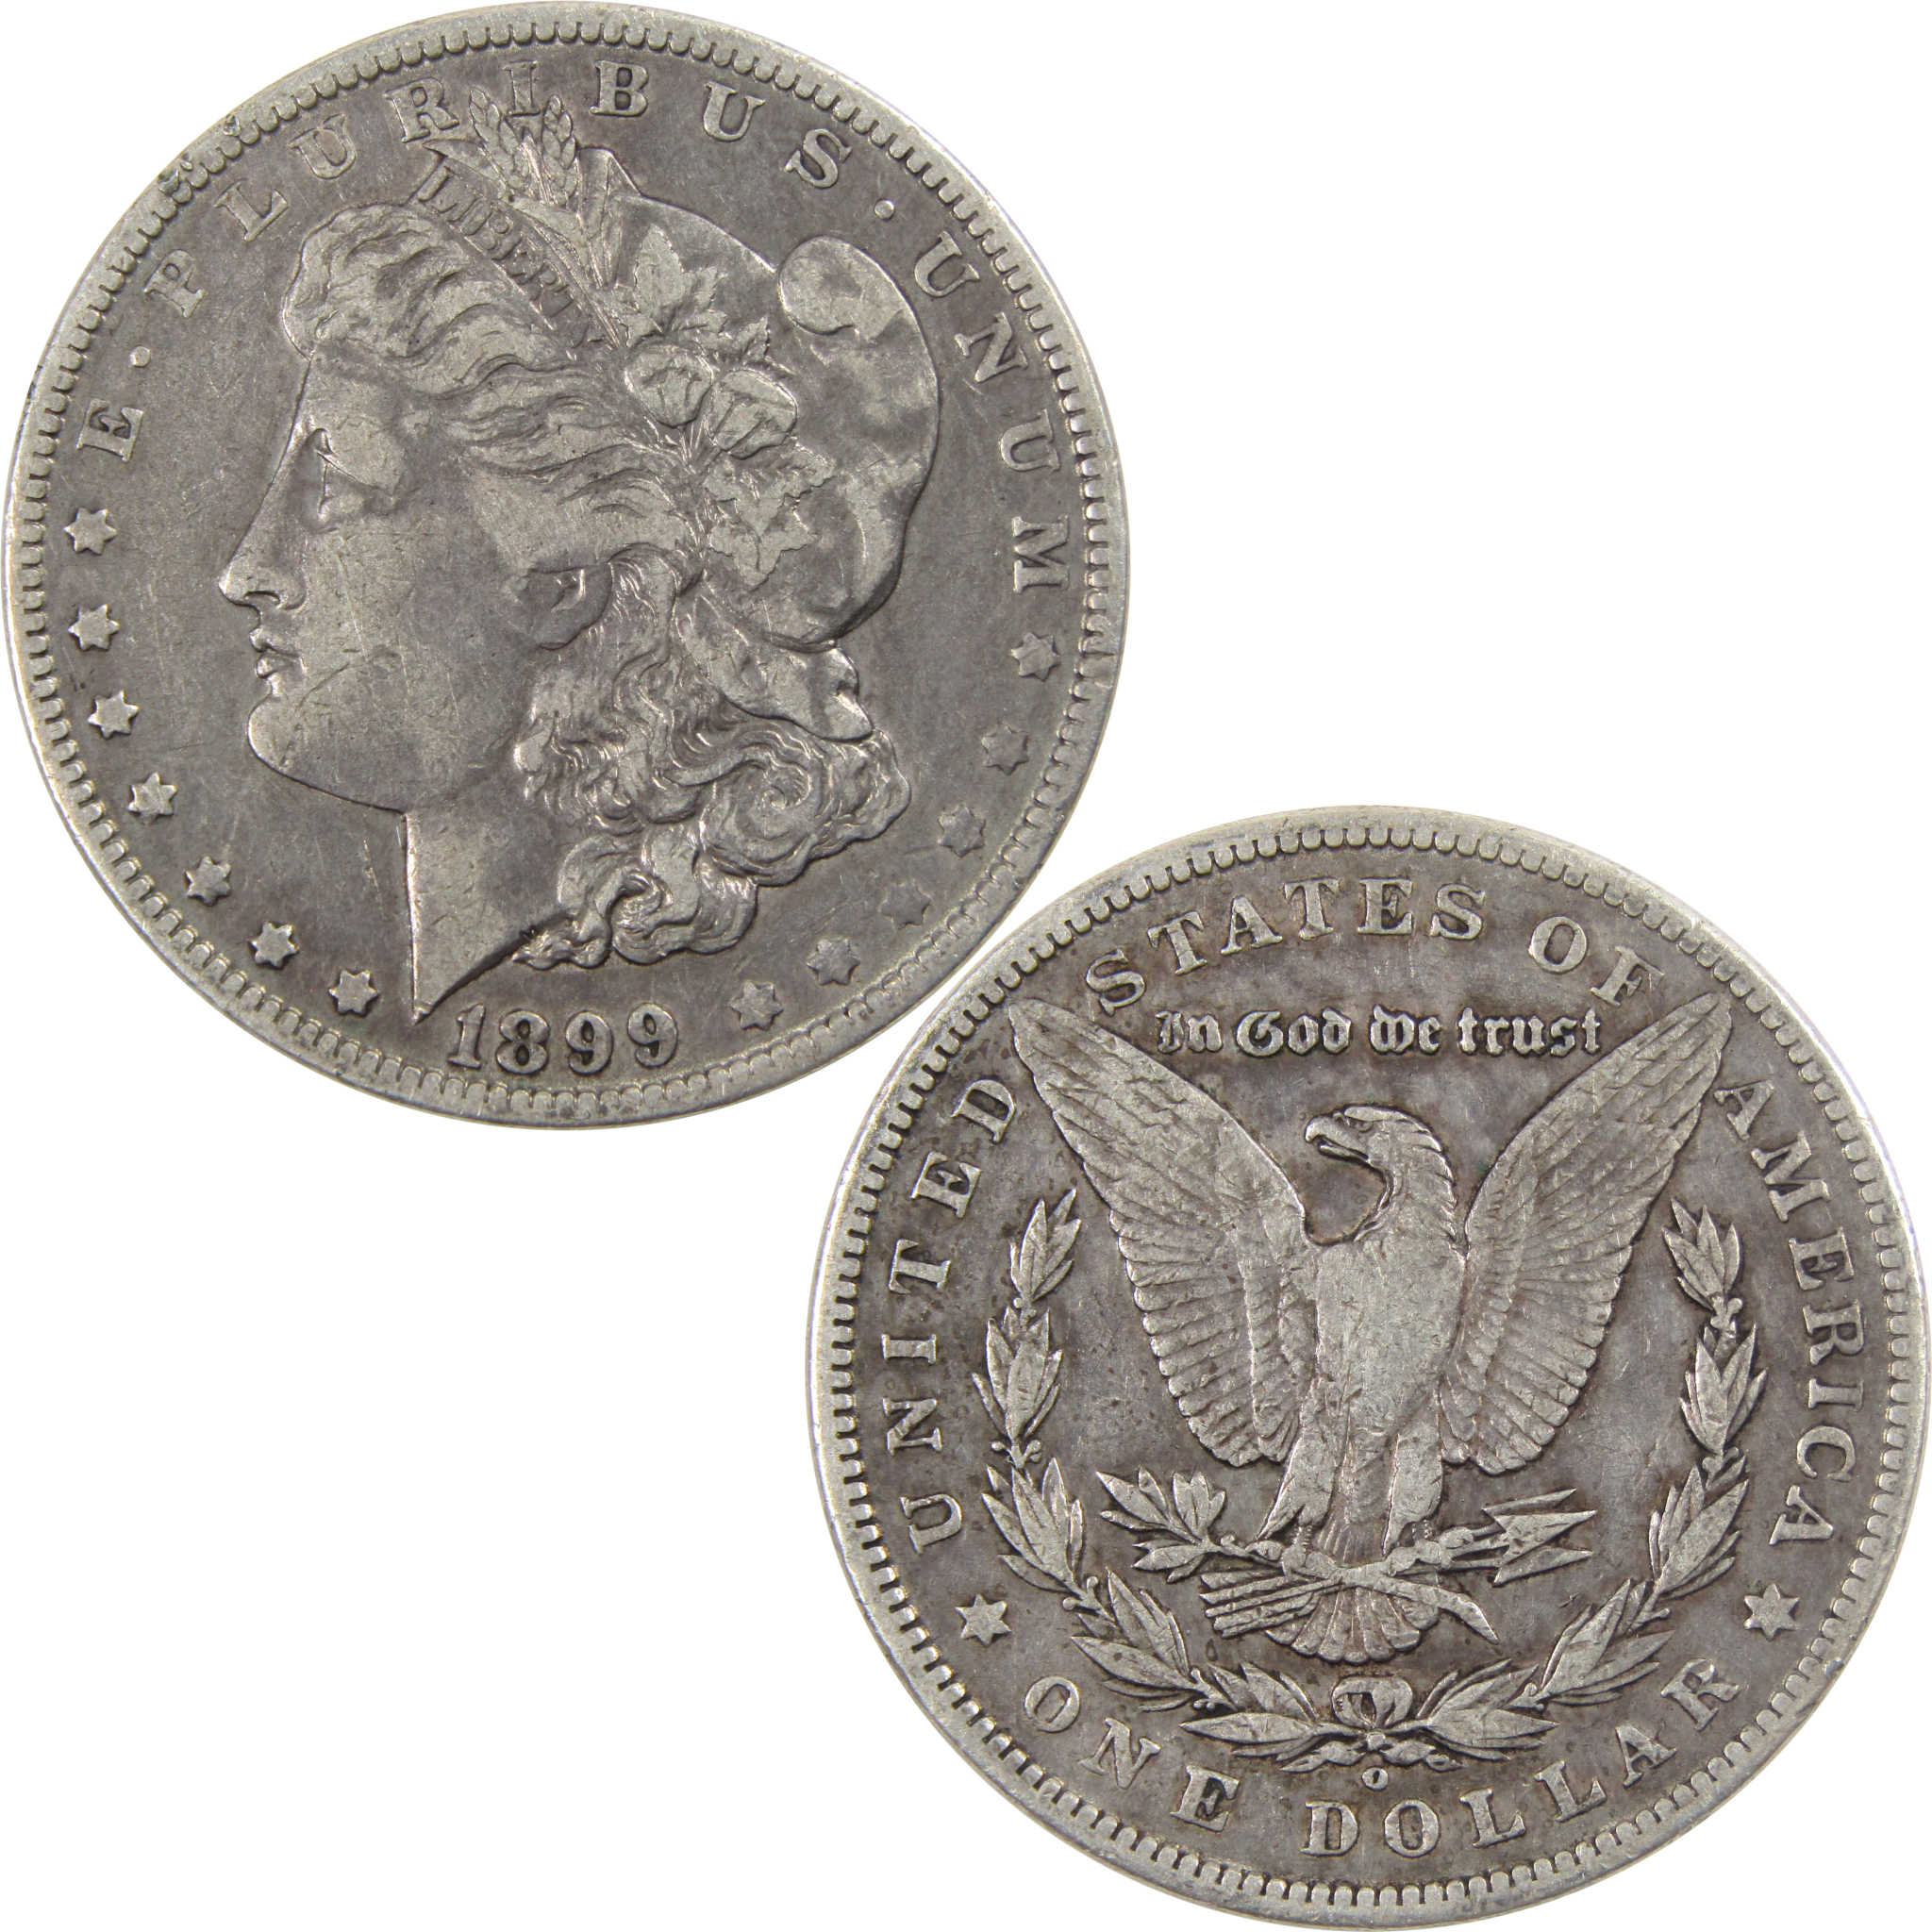 1899 O Micro O Morgan Dollar VF Very Fine 90% Silver $1 Coin SKU:I5943 - Morgan coin - Morgan silver dollar - Morgan silver dollar for sale - Profile Coins &amp; Collectibles